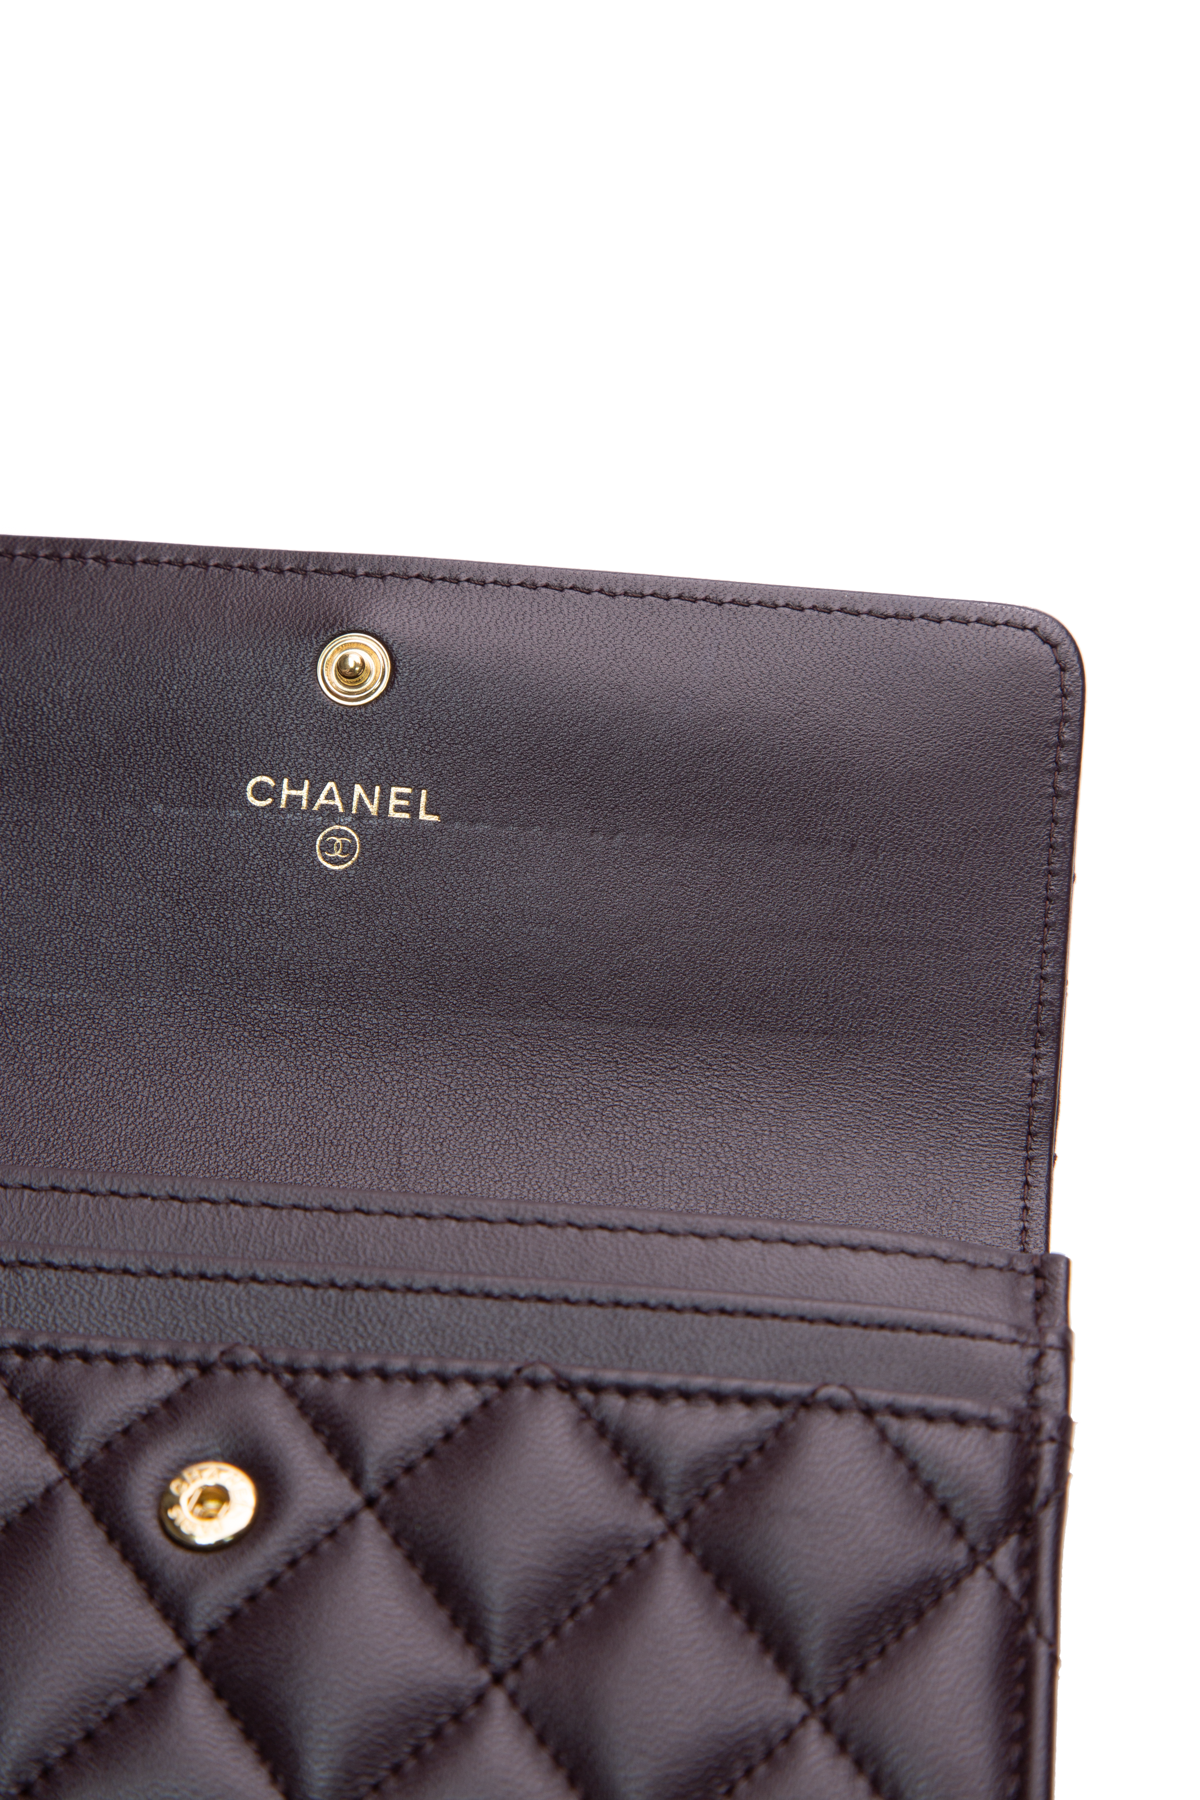 purple chanel flap wallet